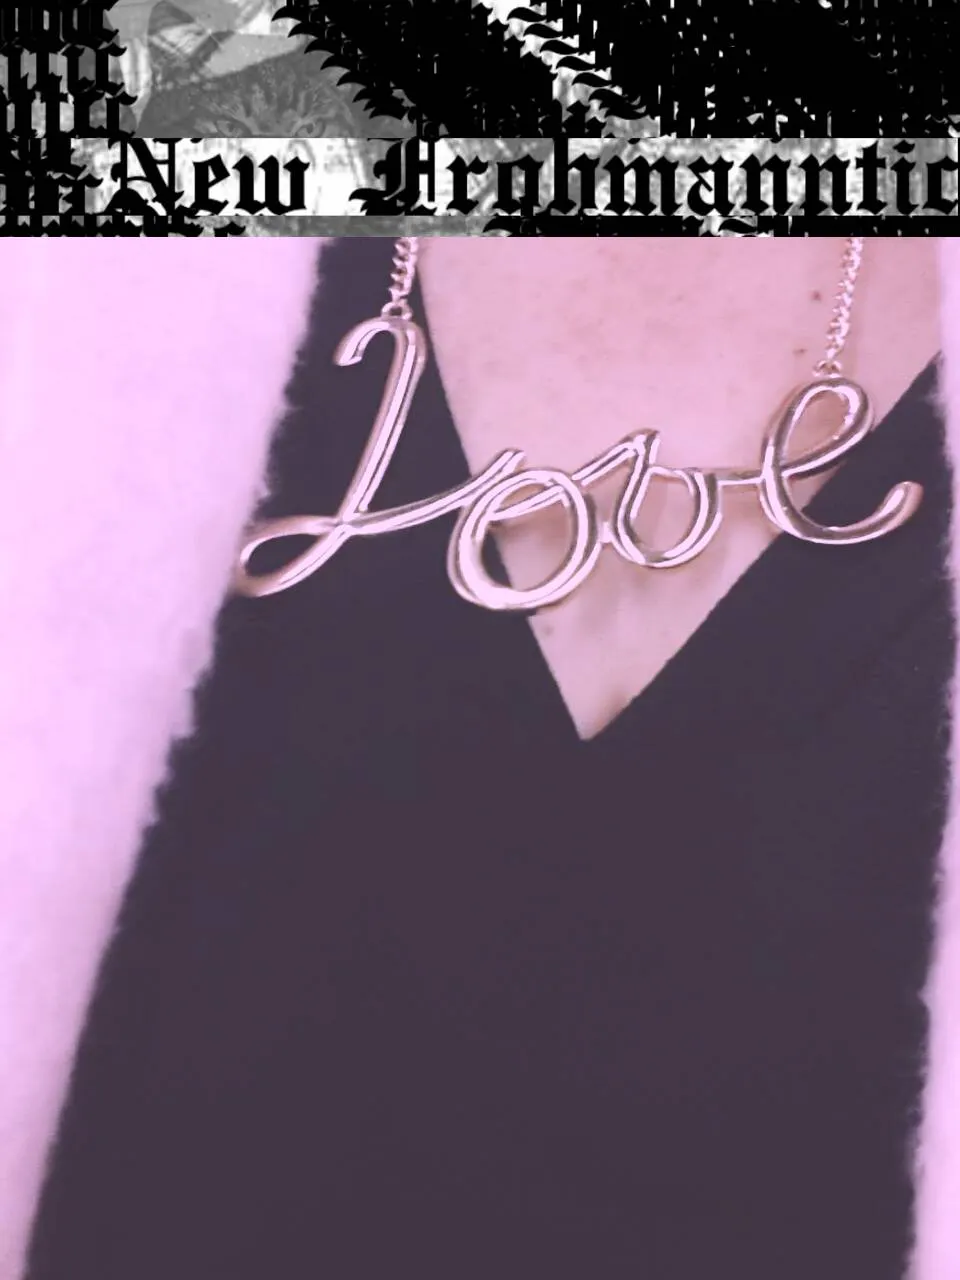 Schriftzug New Frohmanntic, darunter Bild einer Kette mit Schriftzug LOVE